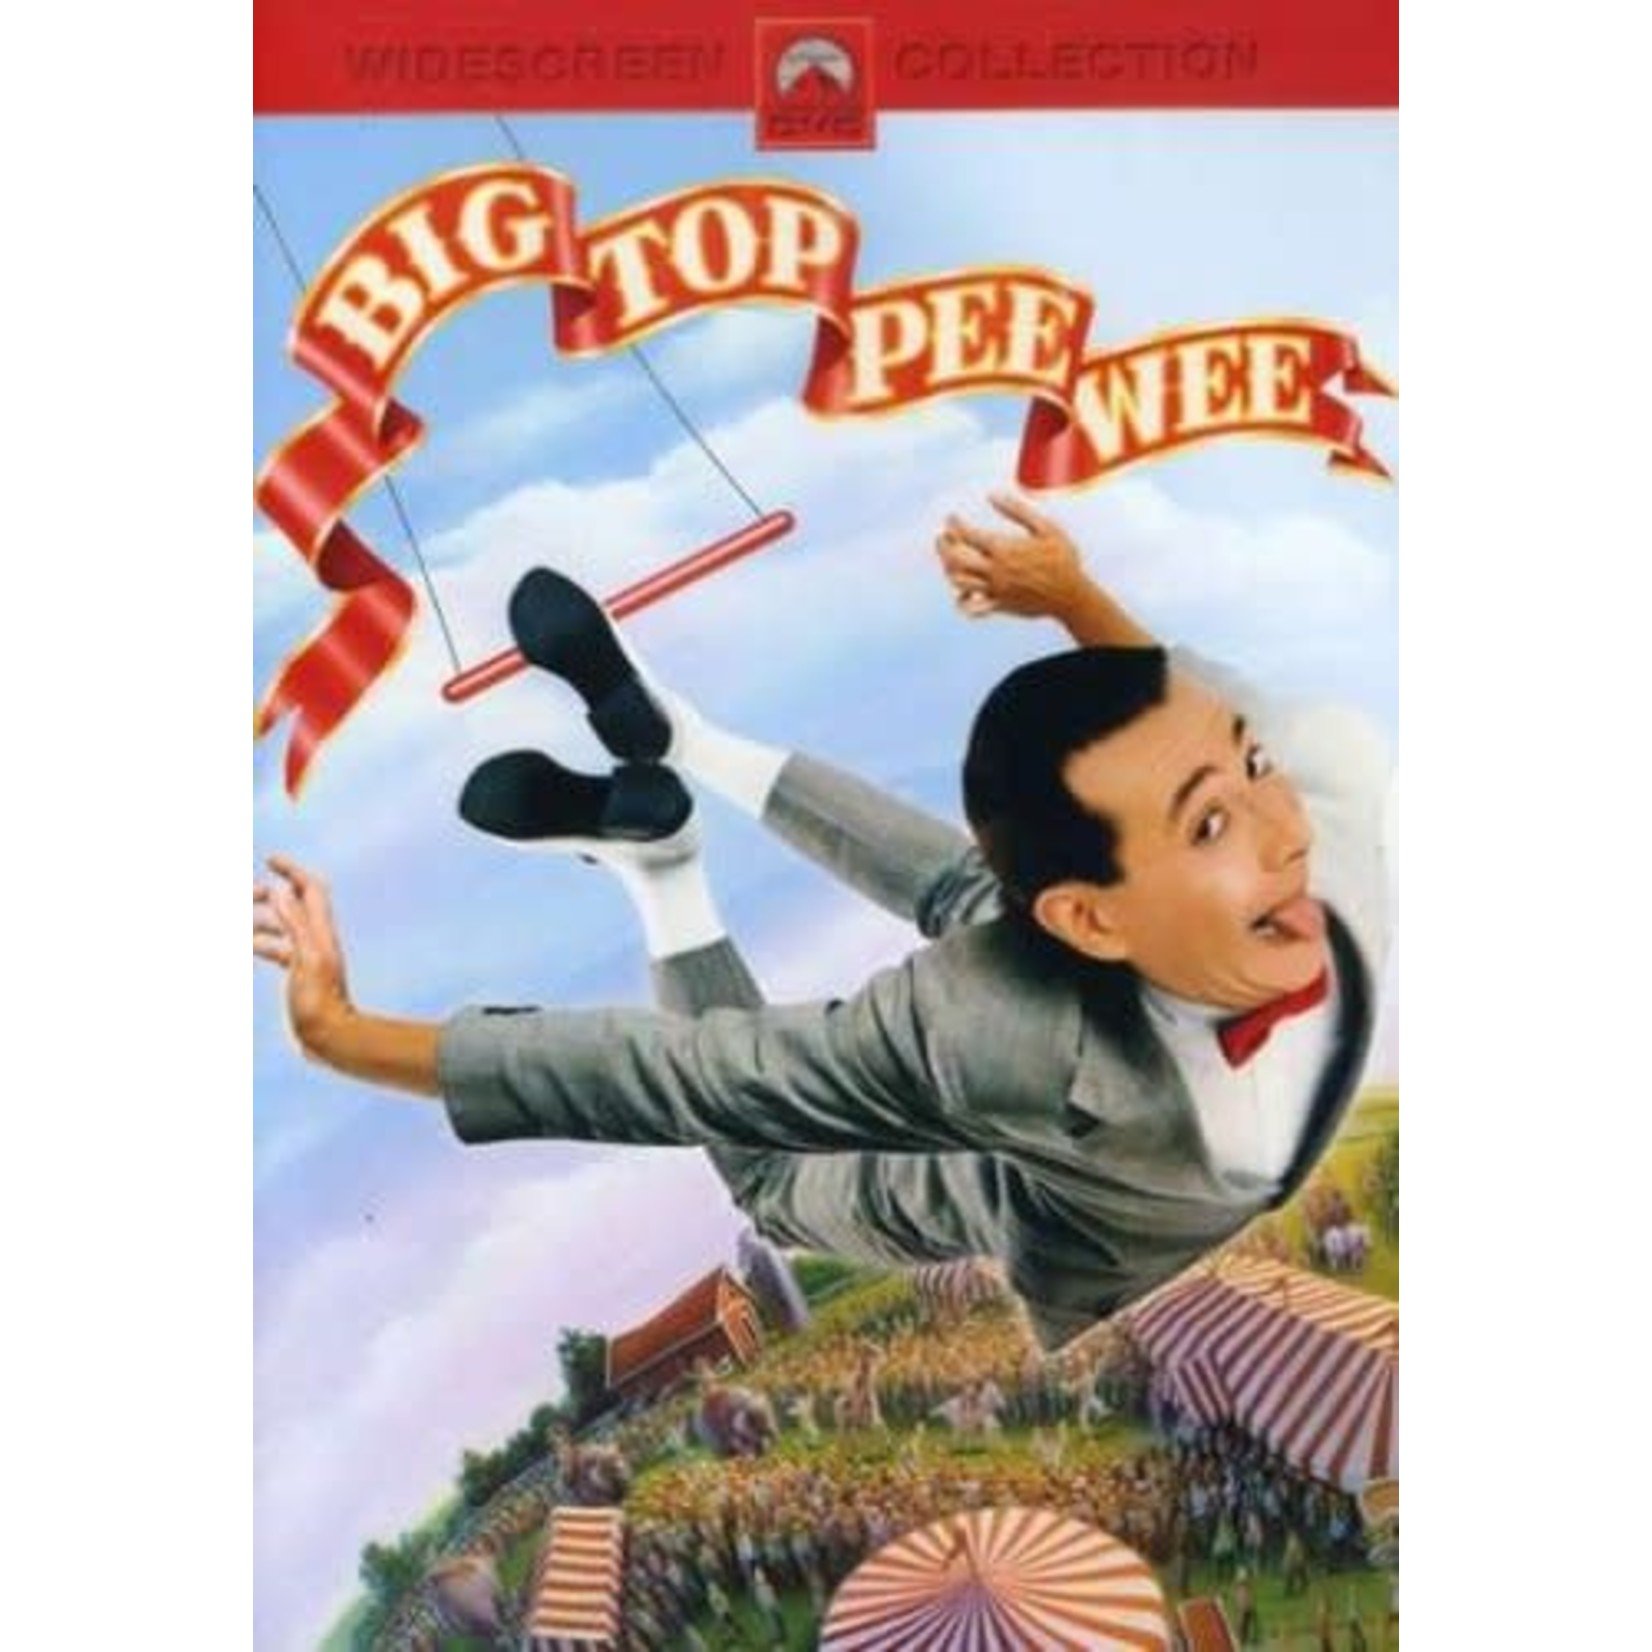 Big Top Pee-Wee (1988) [USED DVD]